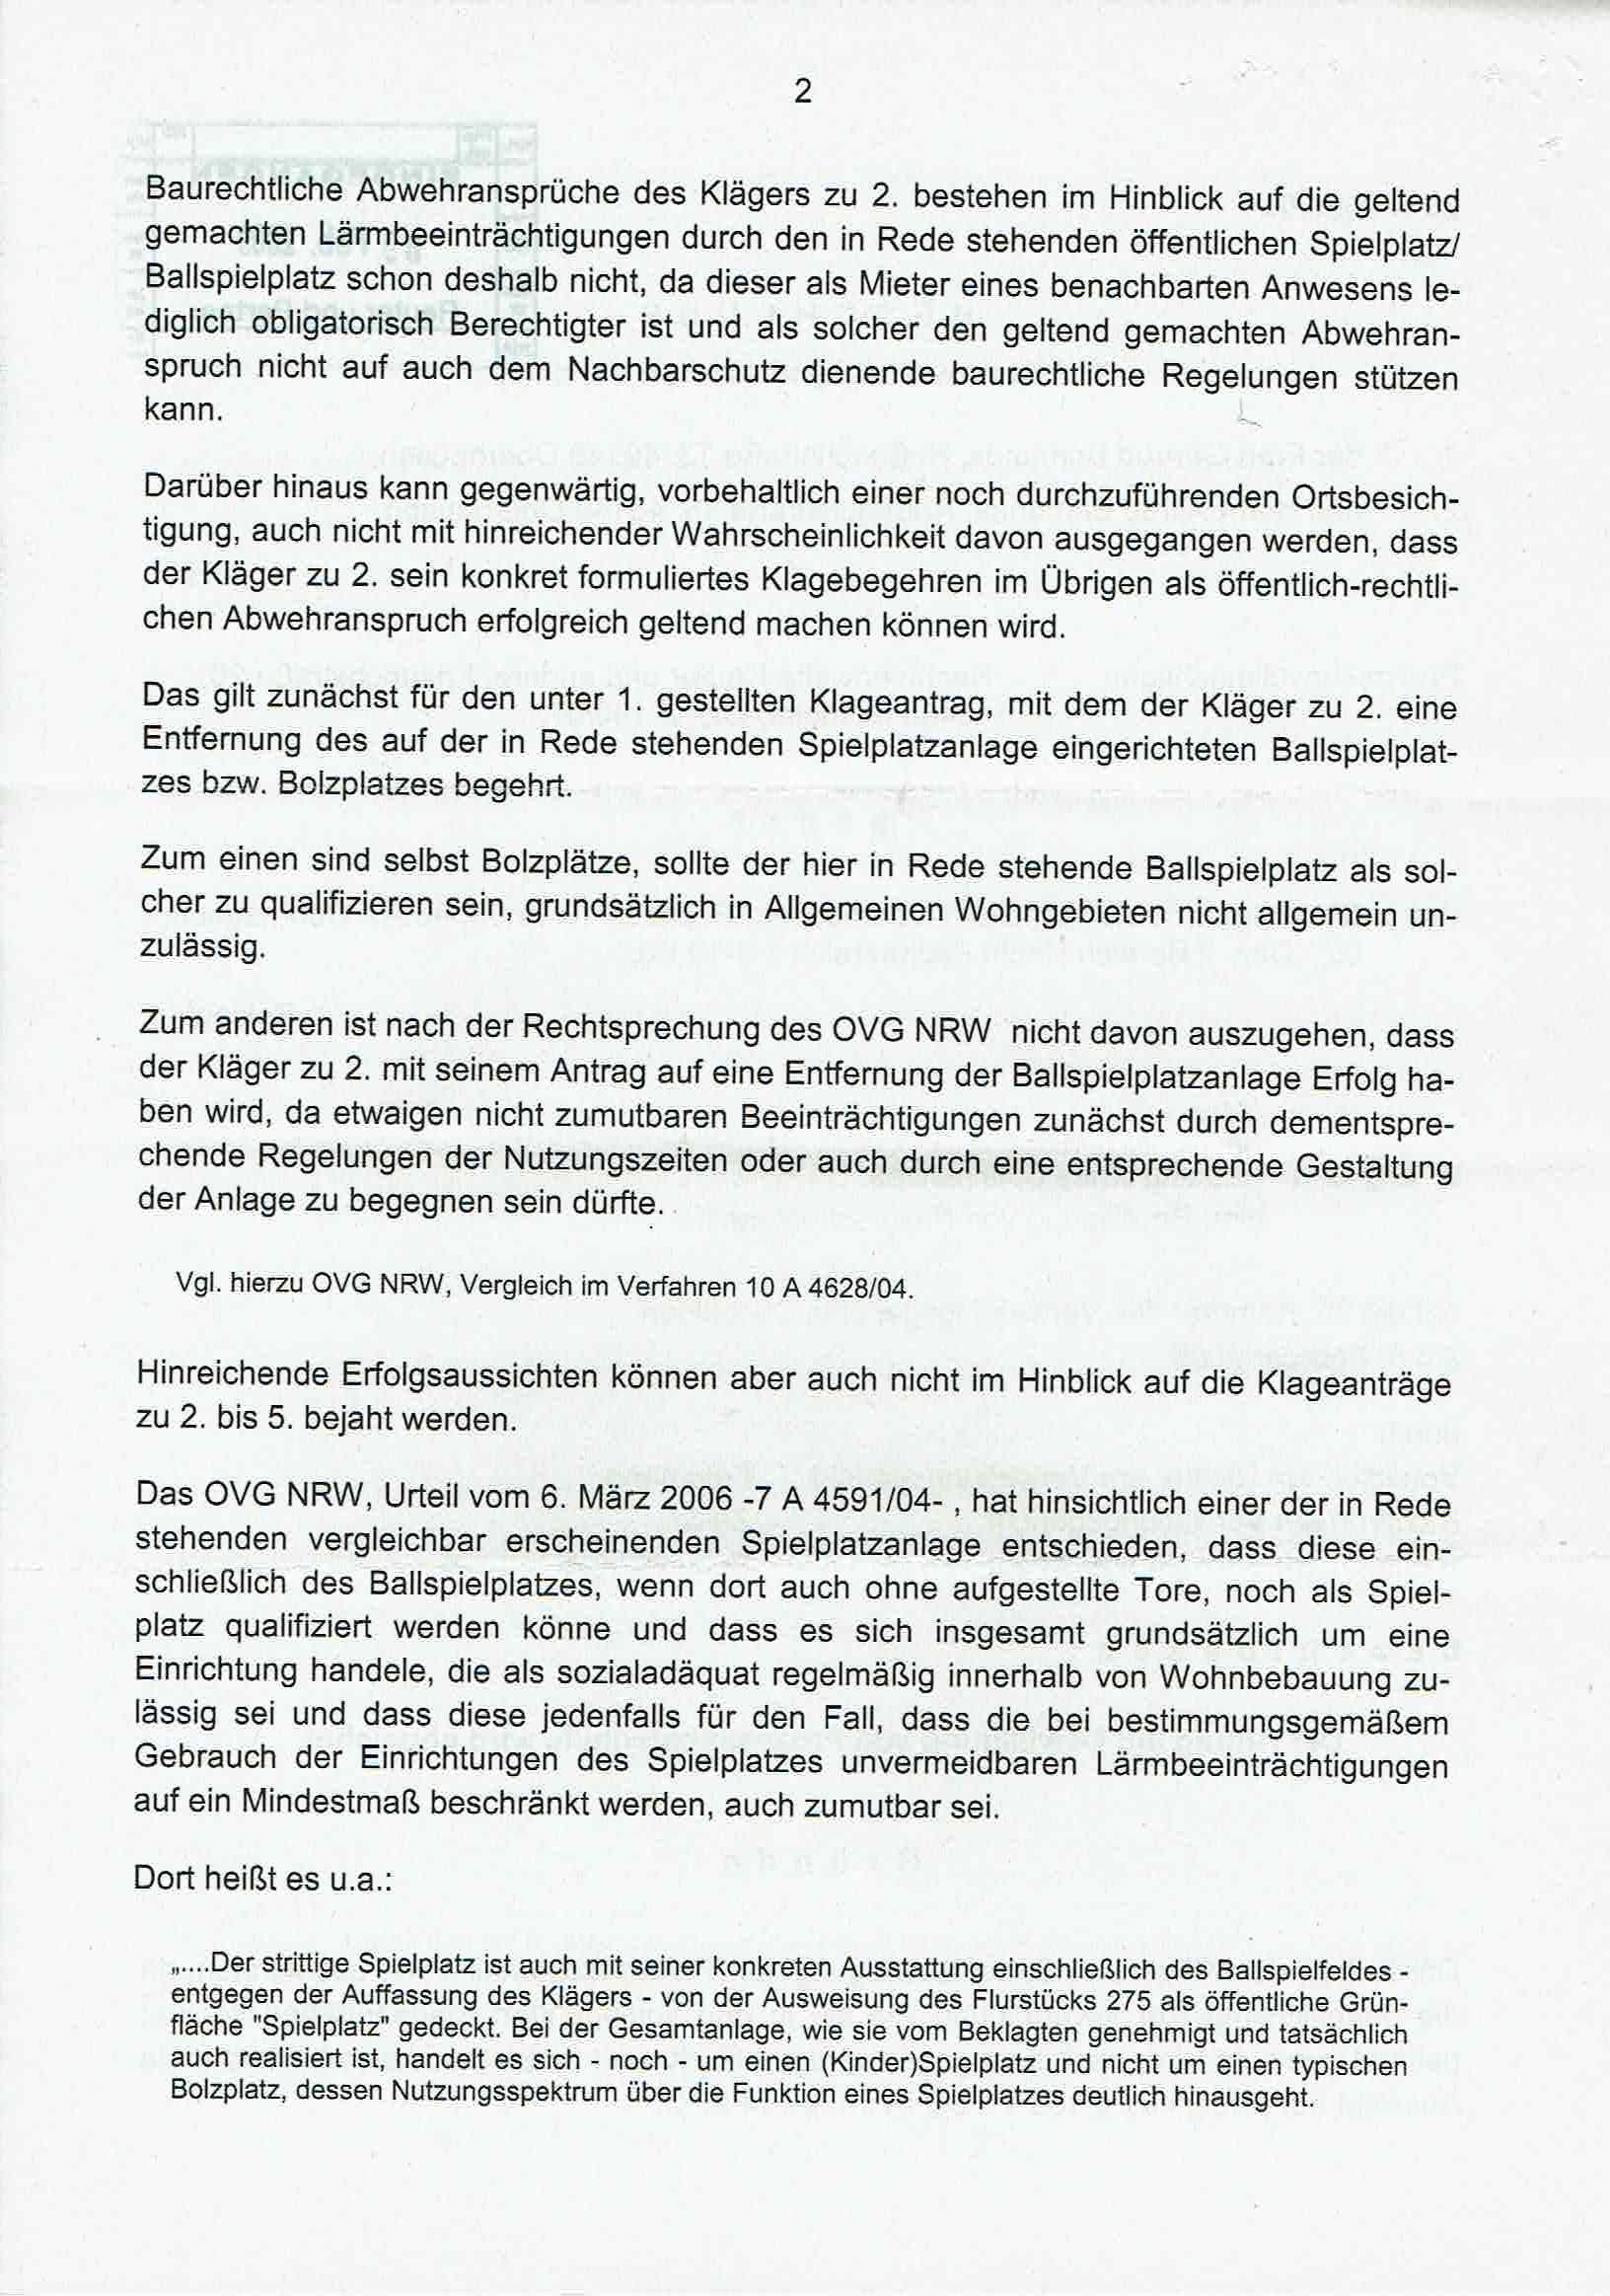 Bescheid der Richter Ulrich Feldmann, Gudrun Zeiß und Rita Schulz-Nagel, Verwaltungsgericht Düsseldorf, über die Ablehnung von Prozeßkostenhilfe vom 05.02.2009, S. 2